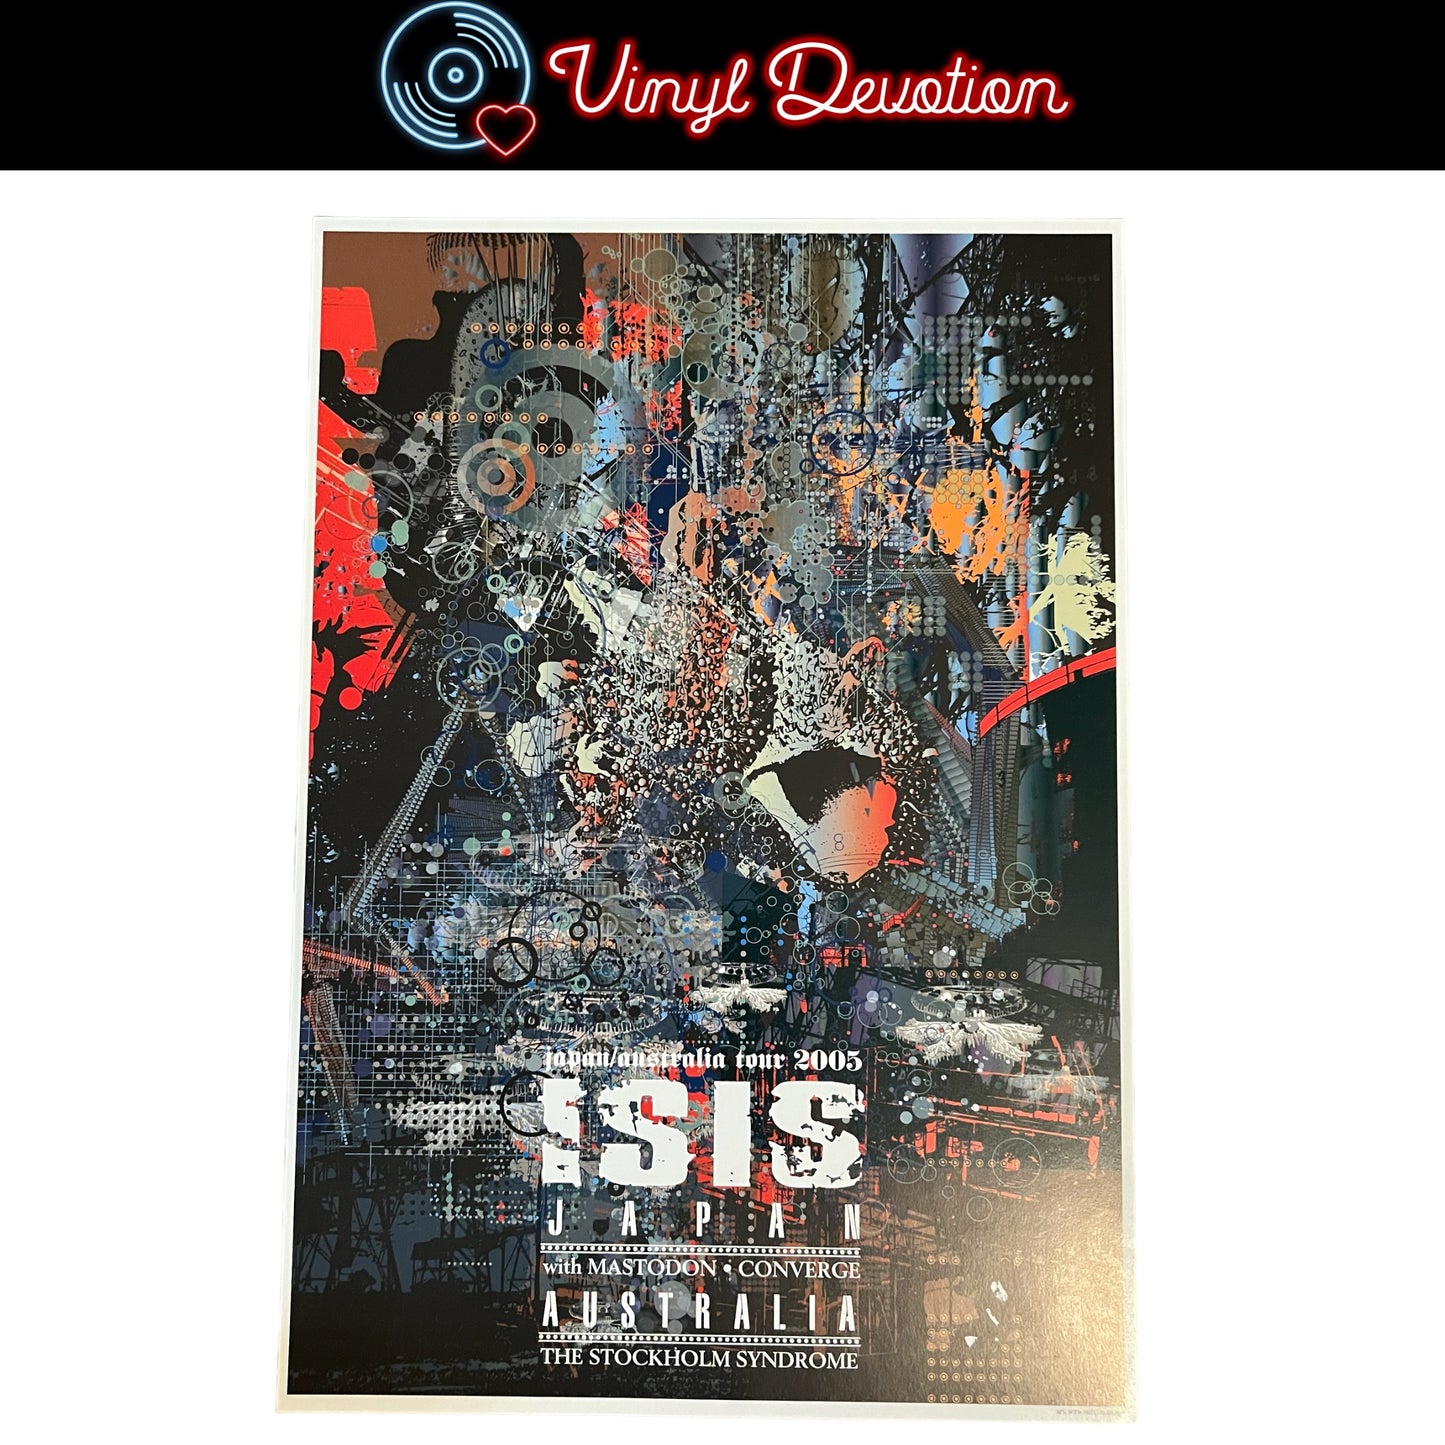 Isis The Band / Mastodon / Converge Australia / Japan Tour 2005 Poster 13.5 x 20 inches